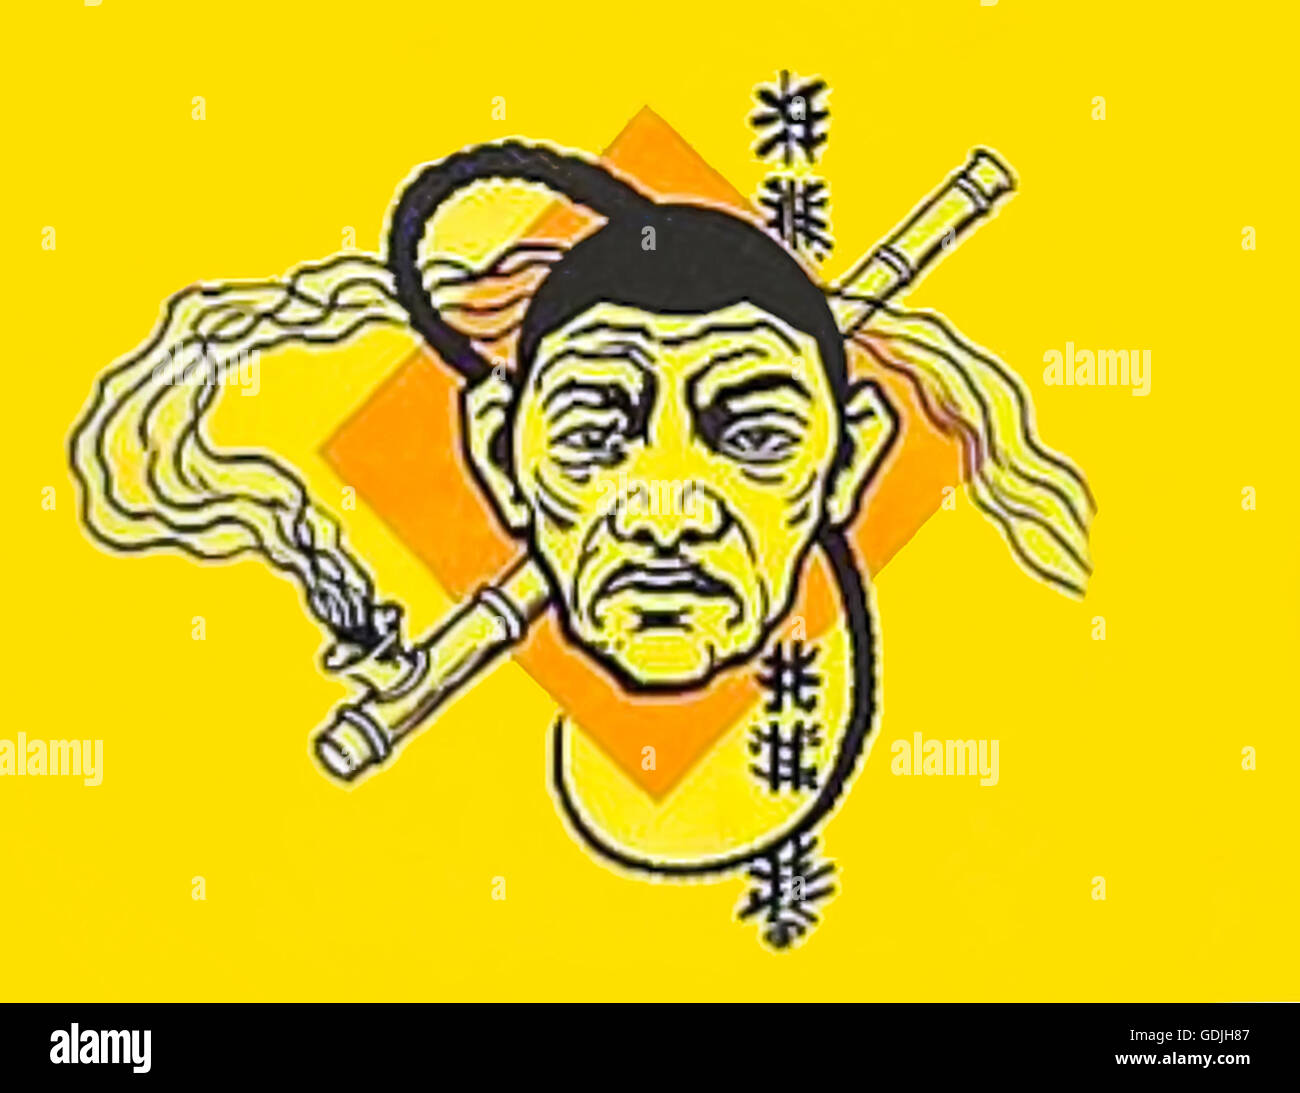 Karikatur eines chinesischen Mann mit einem geflochtenen 'Warteschlange' Zopf und Opium Pfeife aus einem Programmheft von "The King of Opium Ring" spielen, indem Sie Chas A Taylor von Chas E Blaney produziert. Siehe Beschreibung für mehr Informationen. Stockfoto